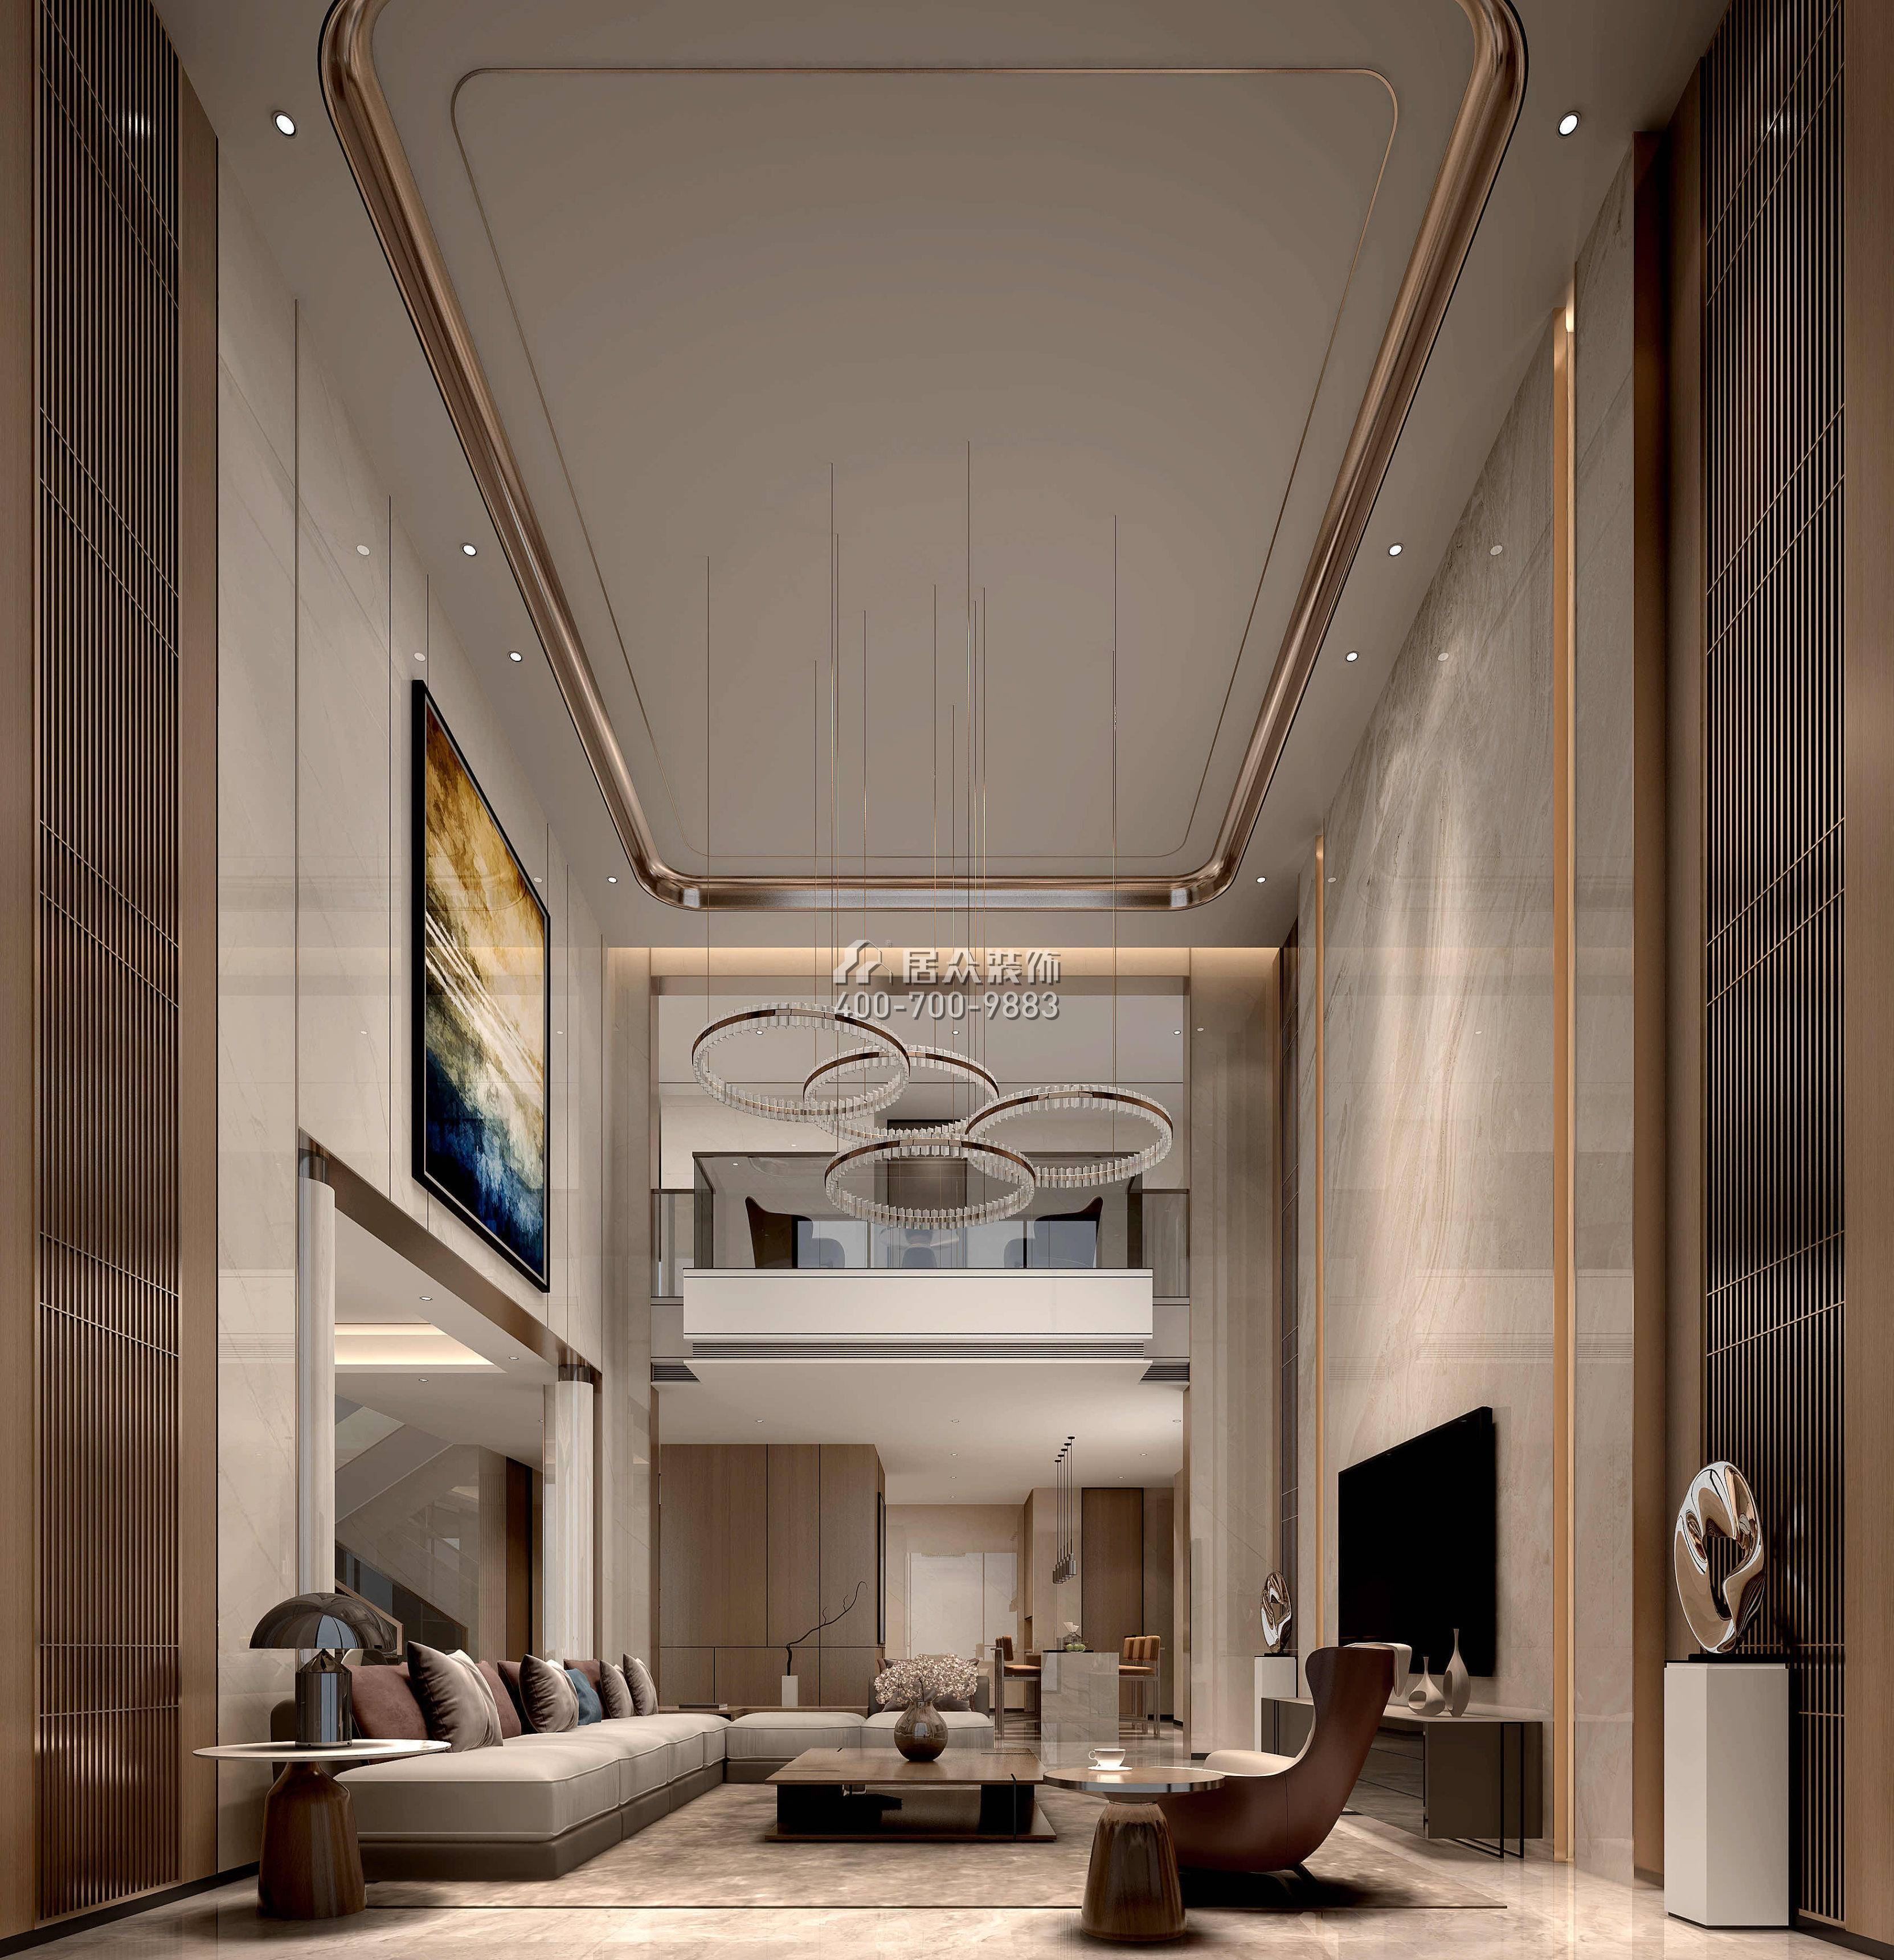 海逸豪庭366平方米現代簡約風格別墅戶型客廳裝修效果圖